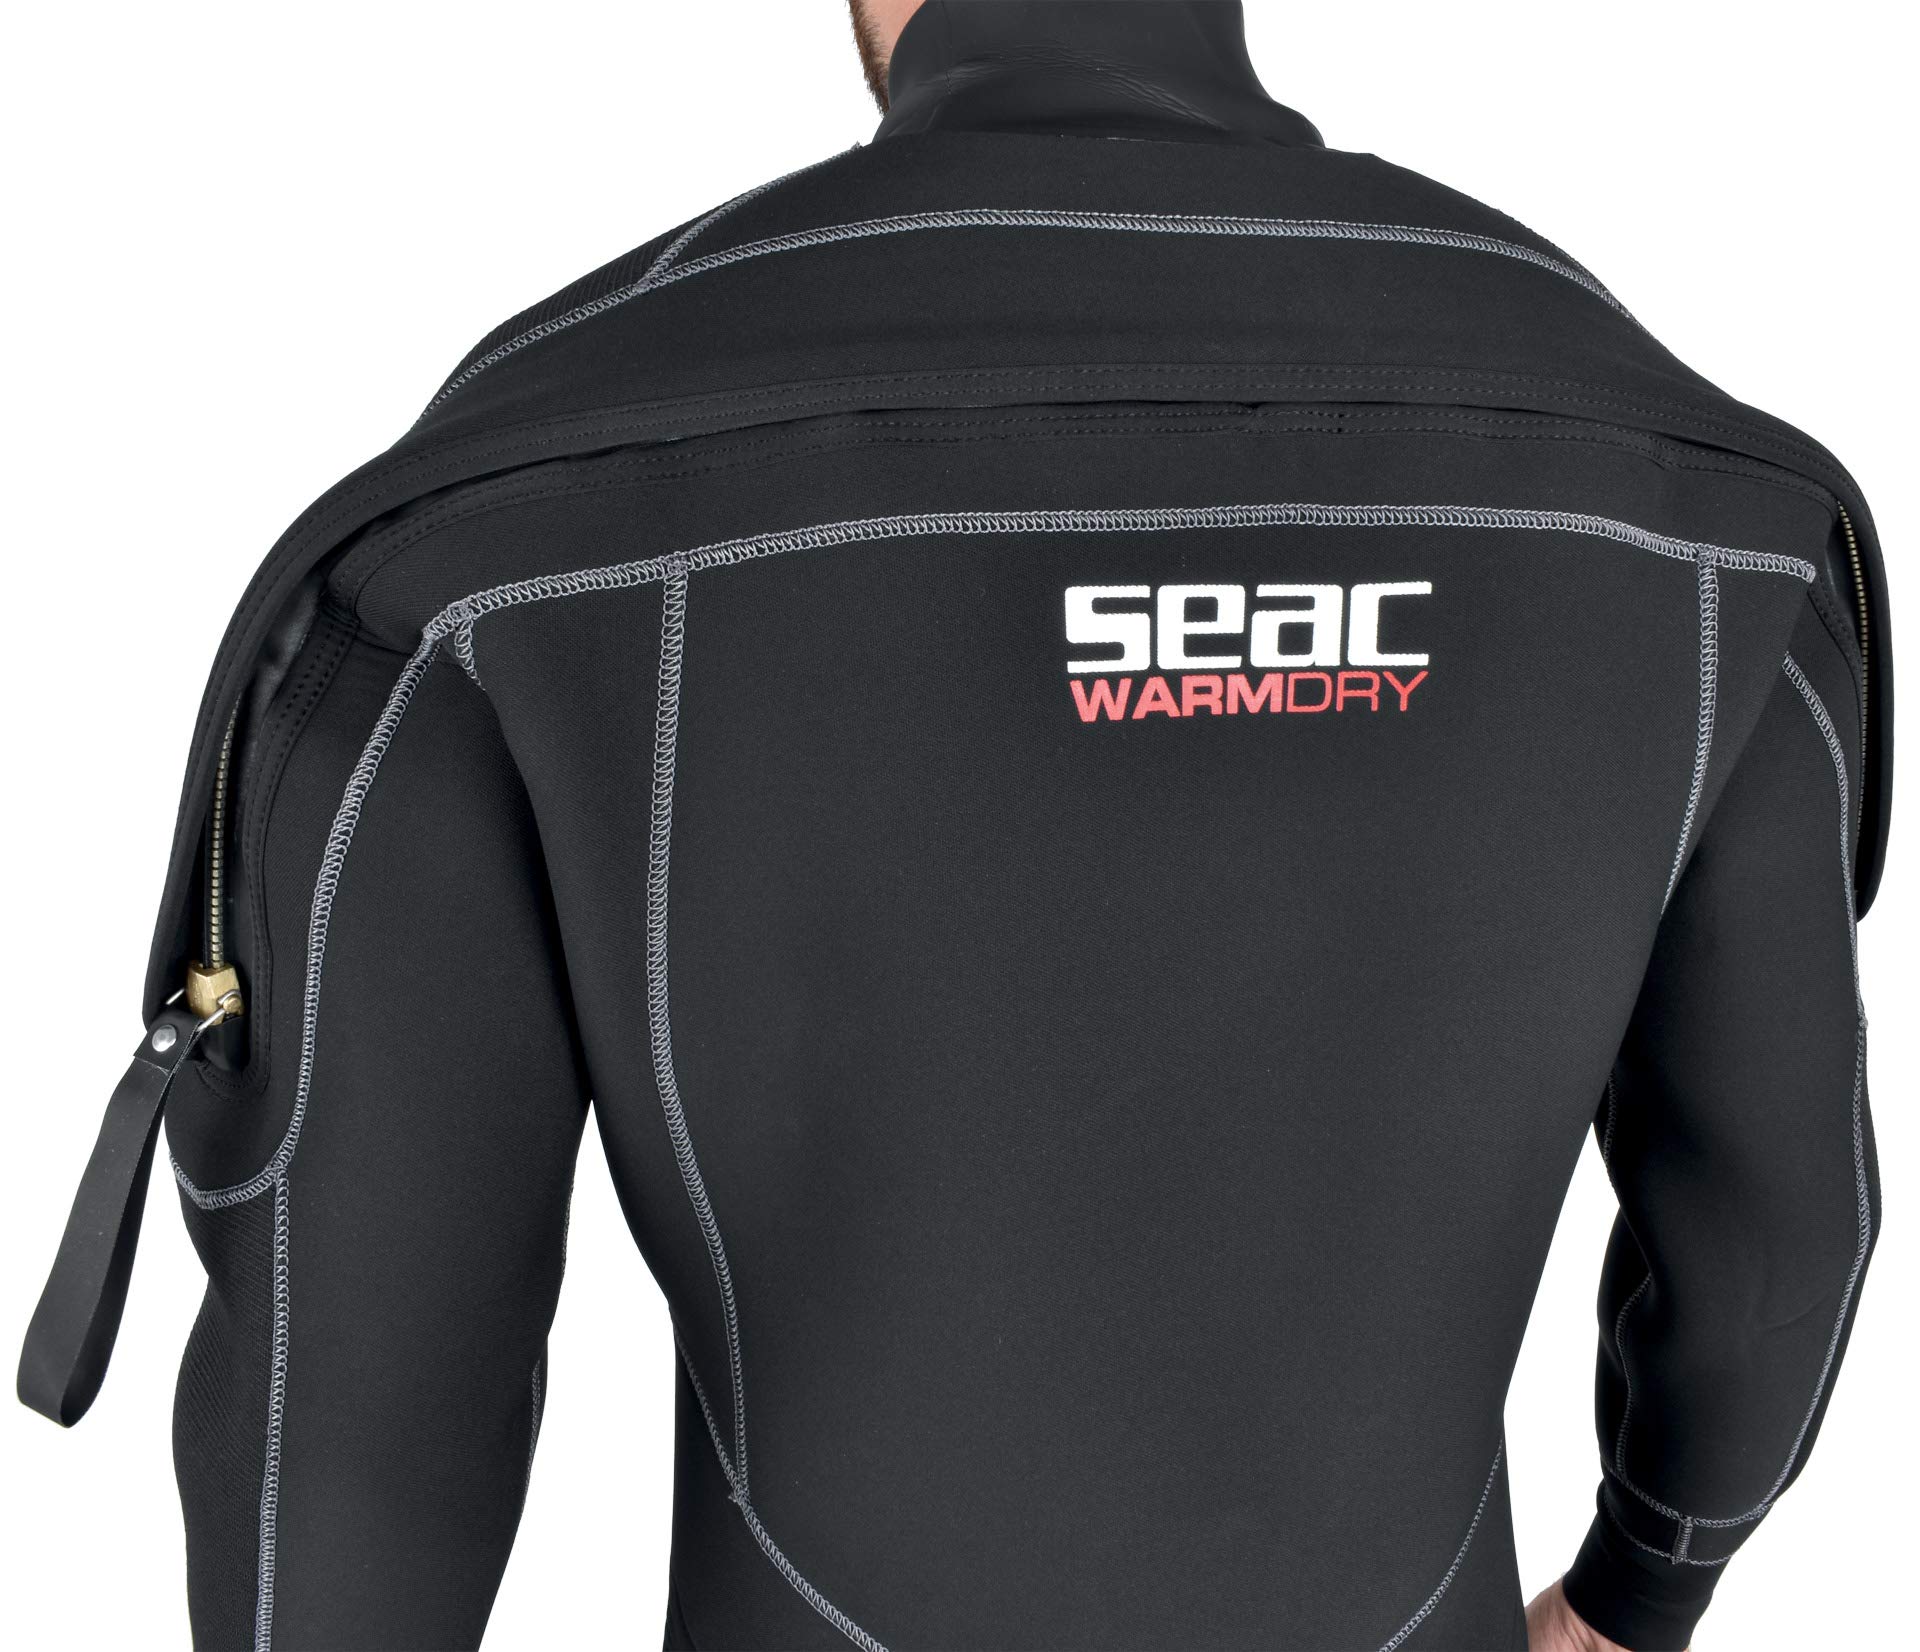 SEAC Men's Warmflex 7-mm Diving Suit (Black Red, XX-Large Plus)